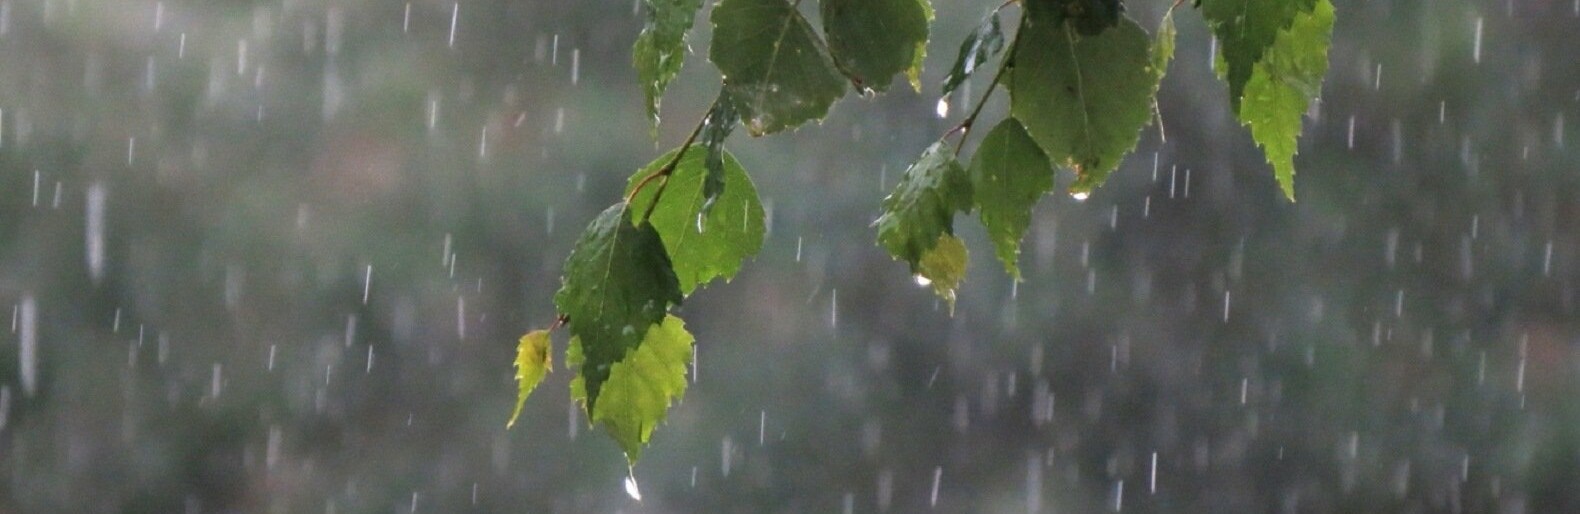 Целый день шел мелкий дождь. Дожди в Осетии.